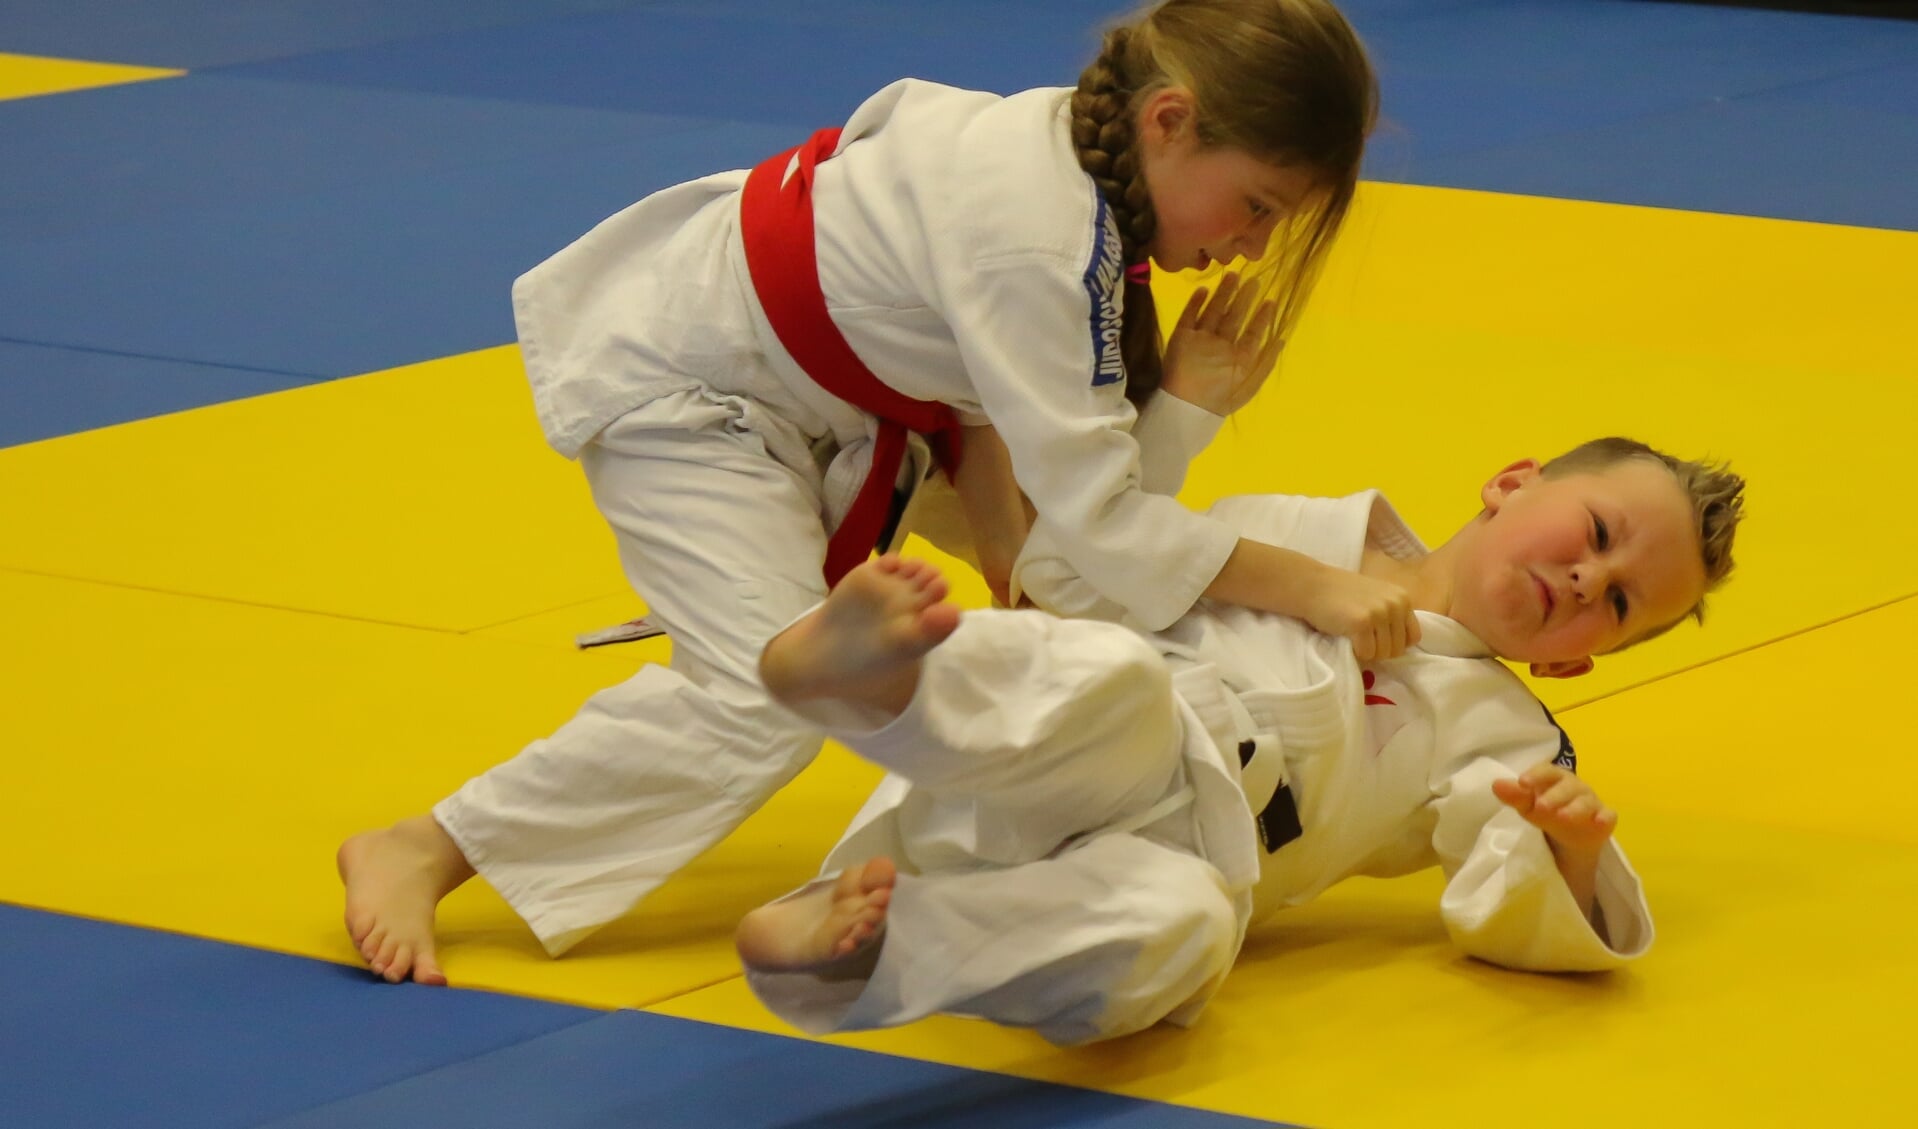 Kennismaken met de judosport bij Judoschool Haagsma.